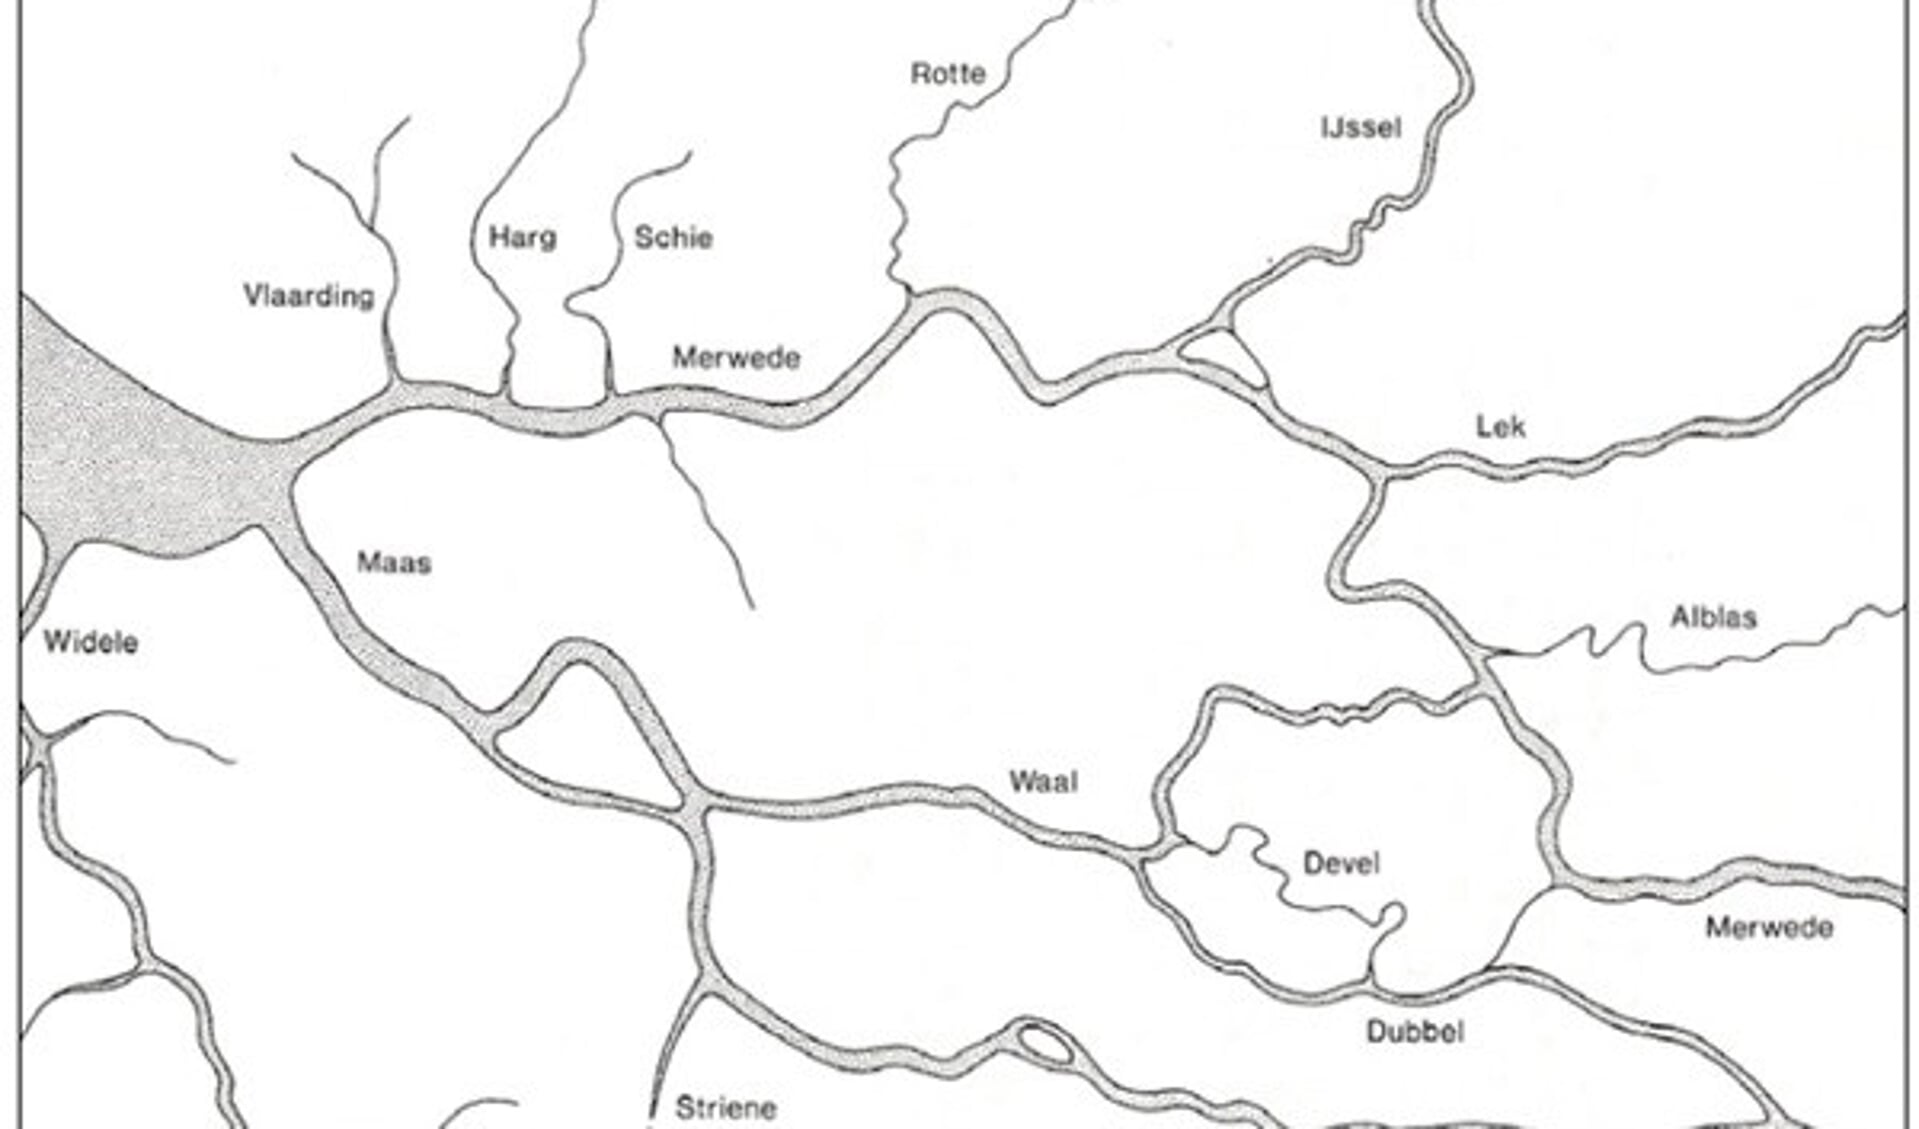 Rivierlopen in het Maasmondgebied omstreeks het jaar 1000 AD (bron: Hageman, 1991)